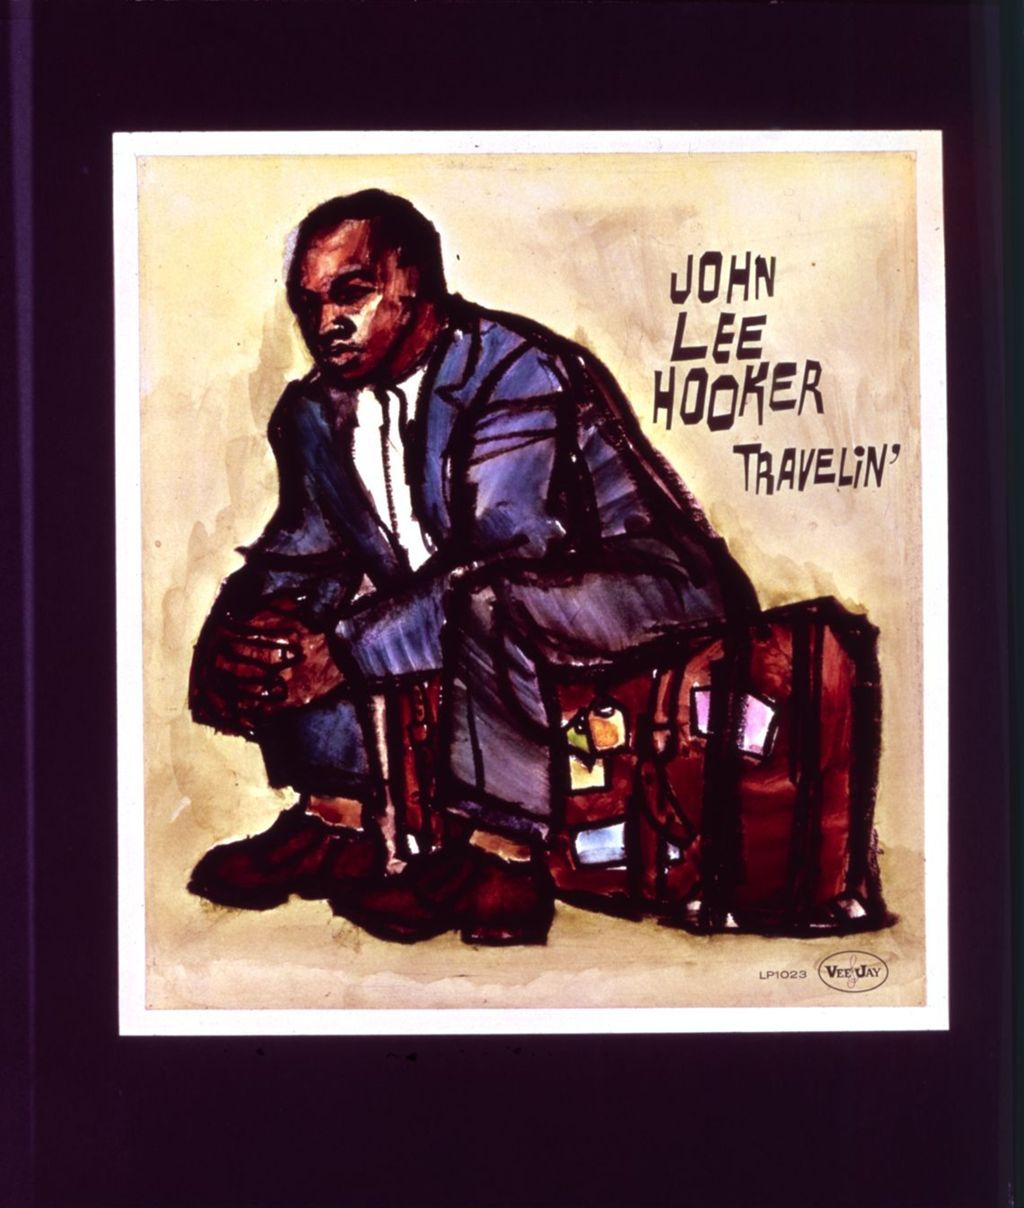 Travelin', John Lee Hooker, album cover